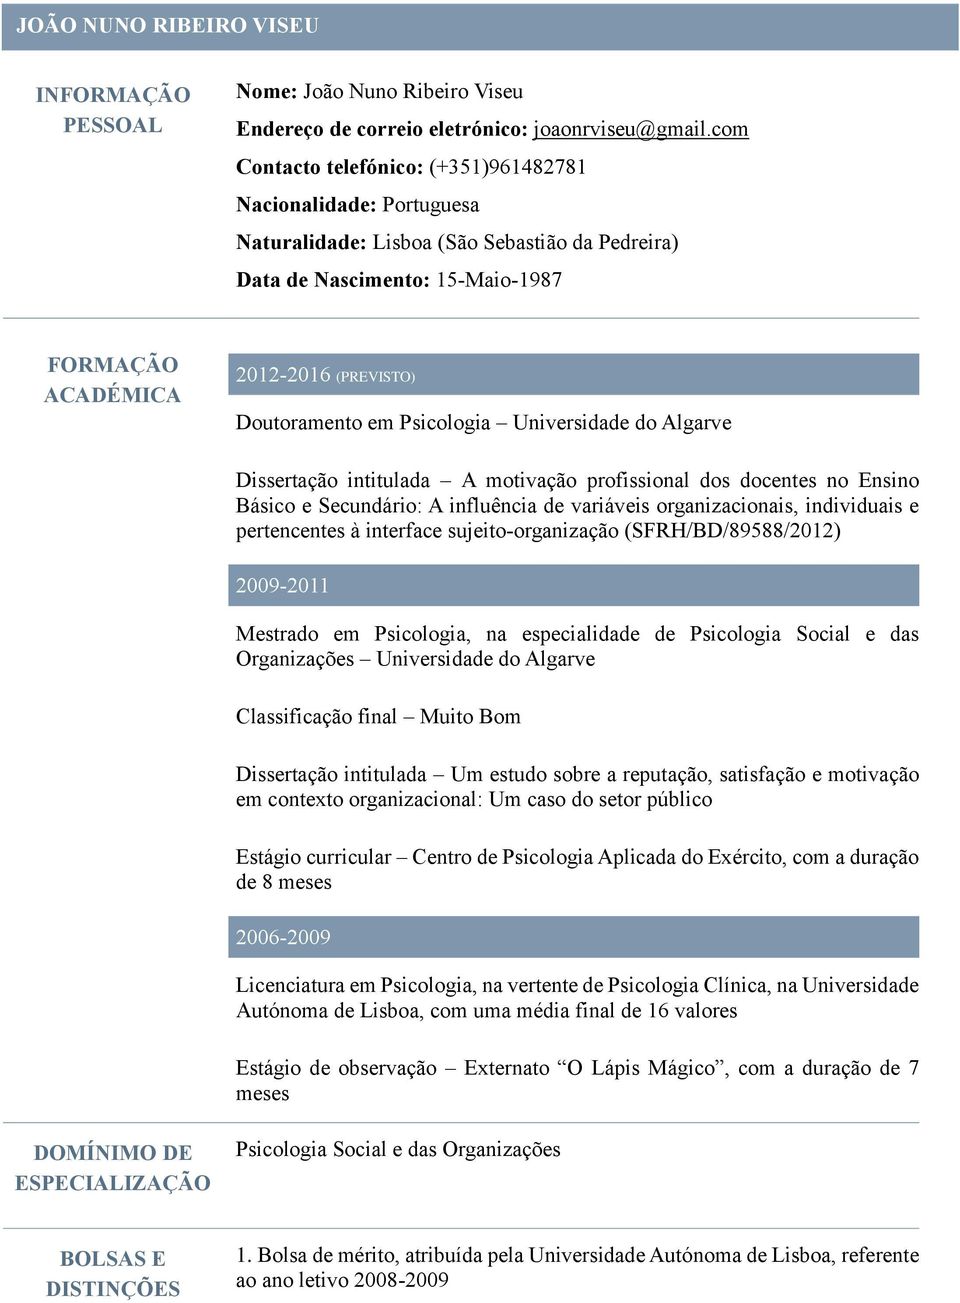 Doutoramento em Psicologia Universidade do Algarve Dissertação intitulada A motivação profissional dos docentes no Ensino Básico e Secundário: A influência de variáveis organizacionais, individuais e